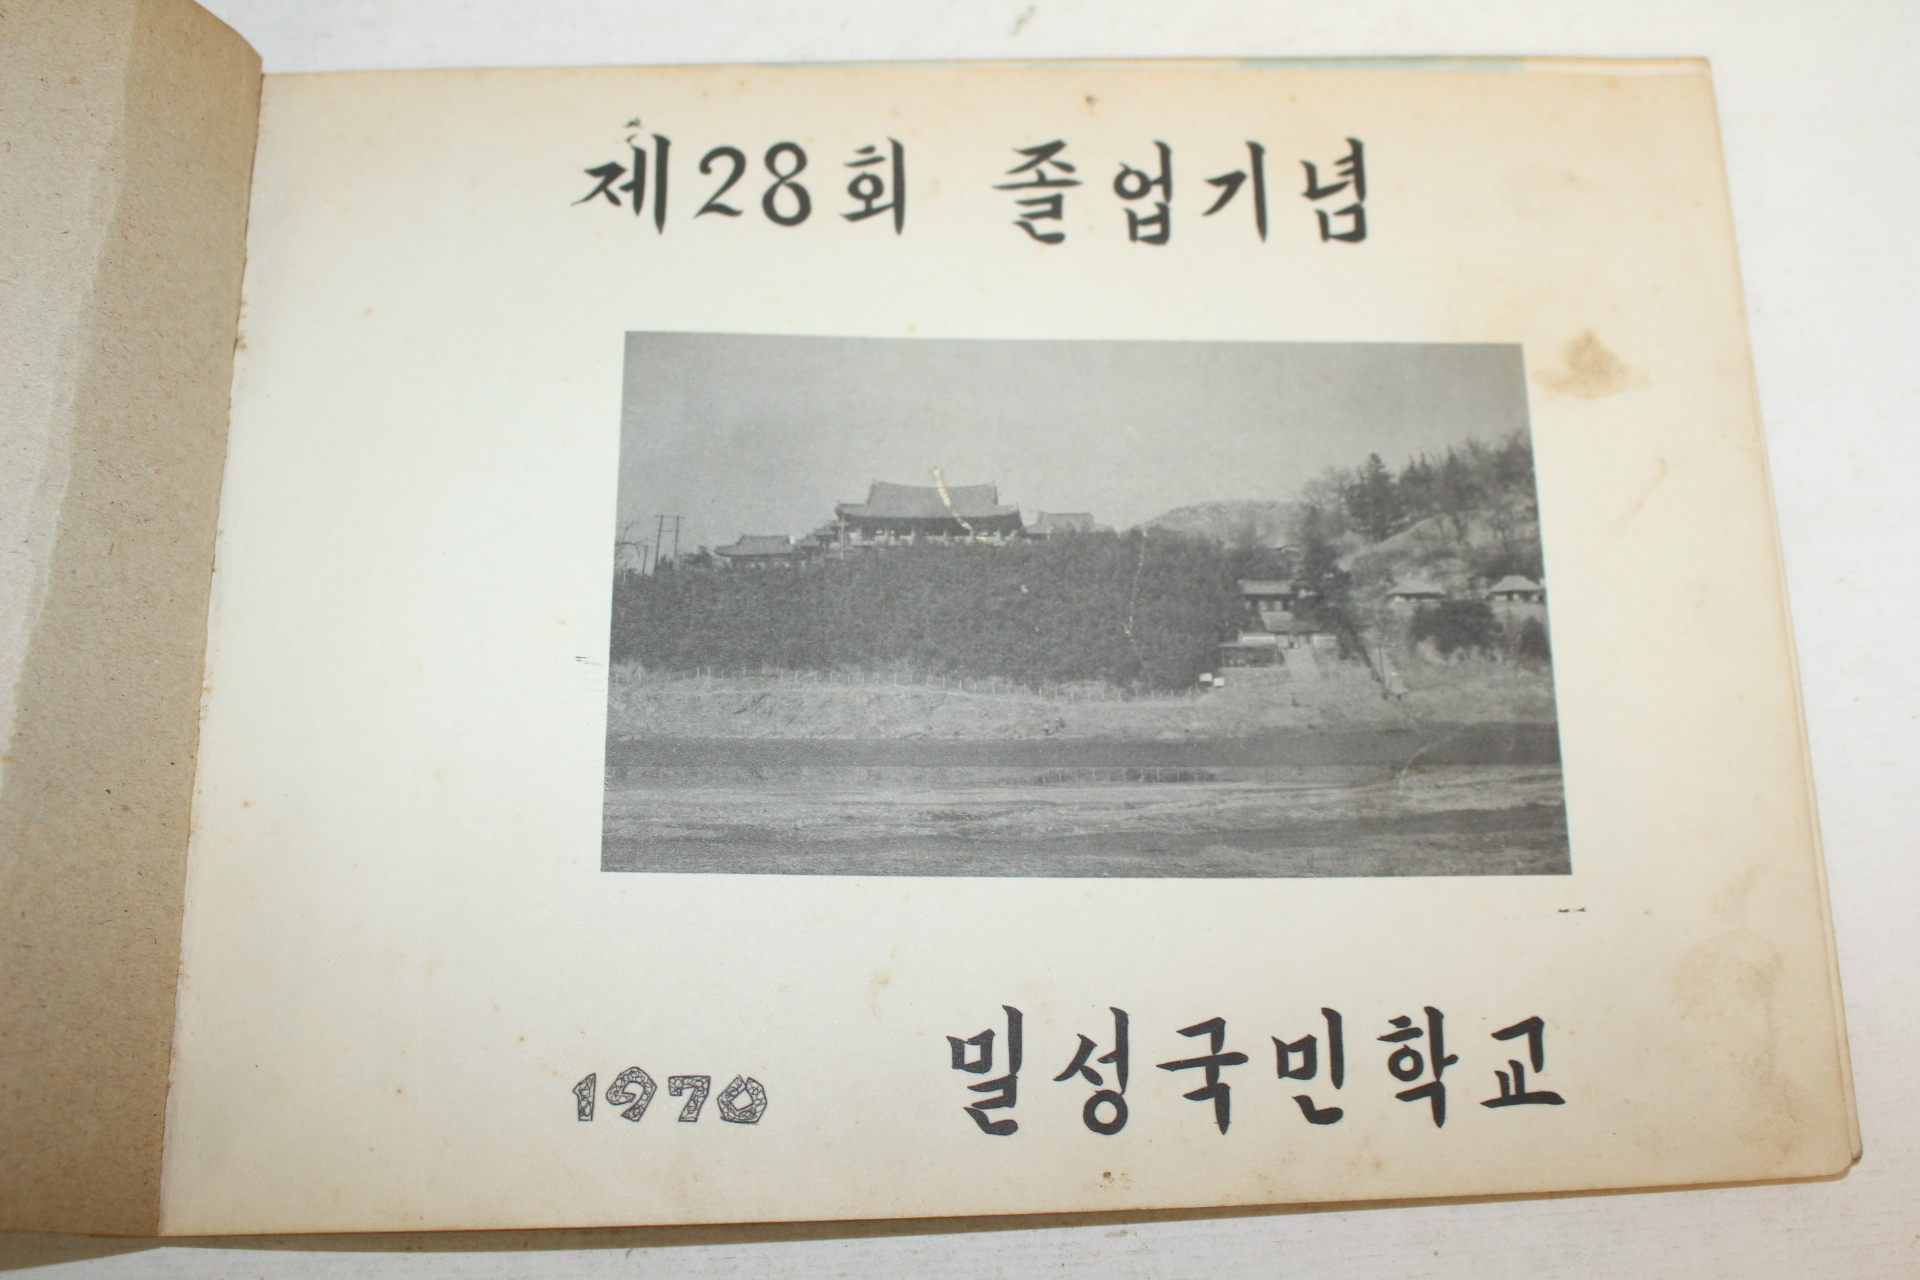 1970년 밀성국민학교 제28회 졸업기념 앨범